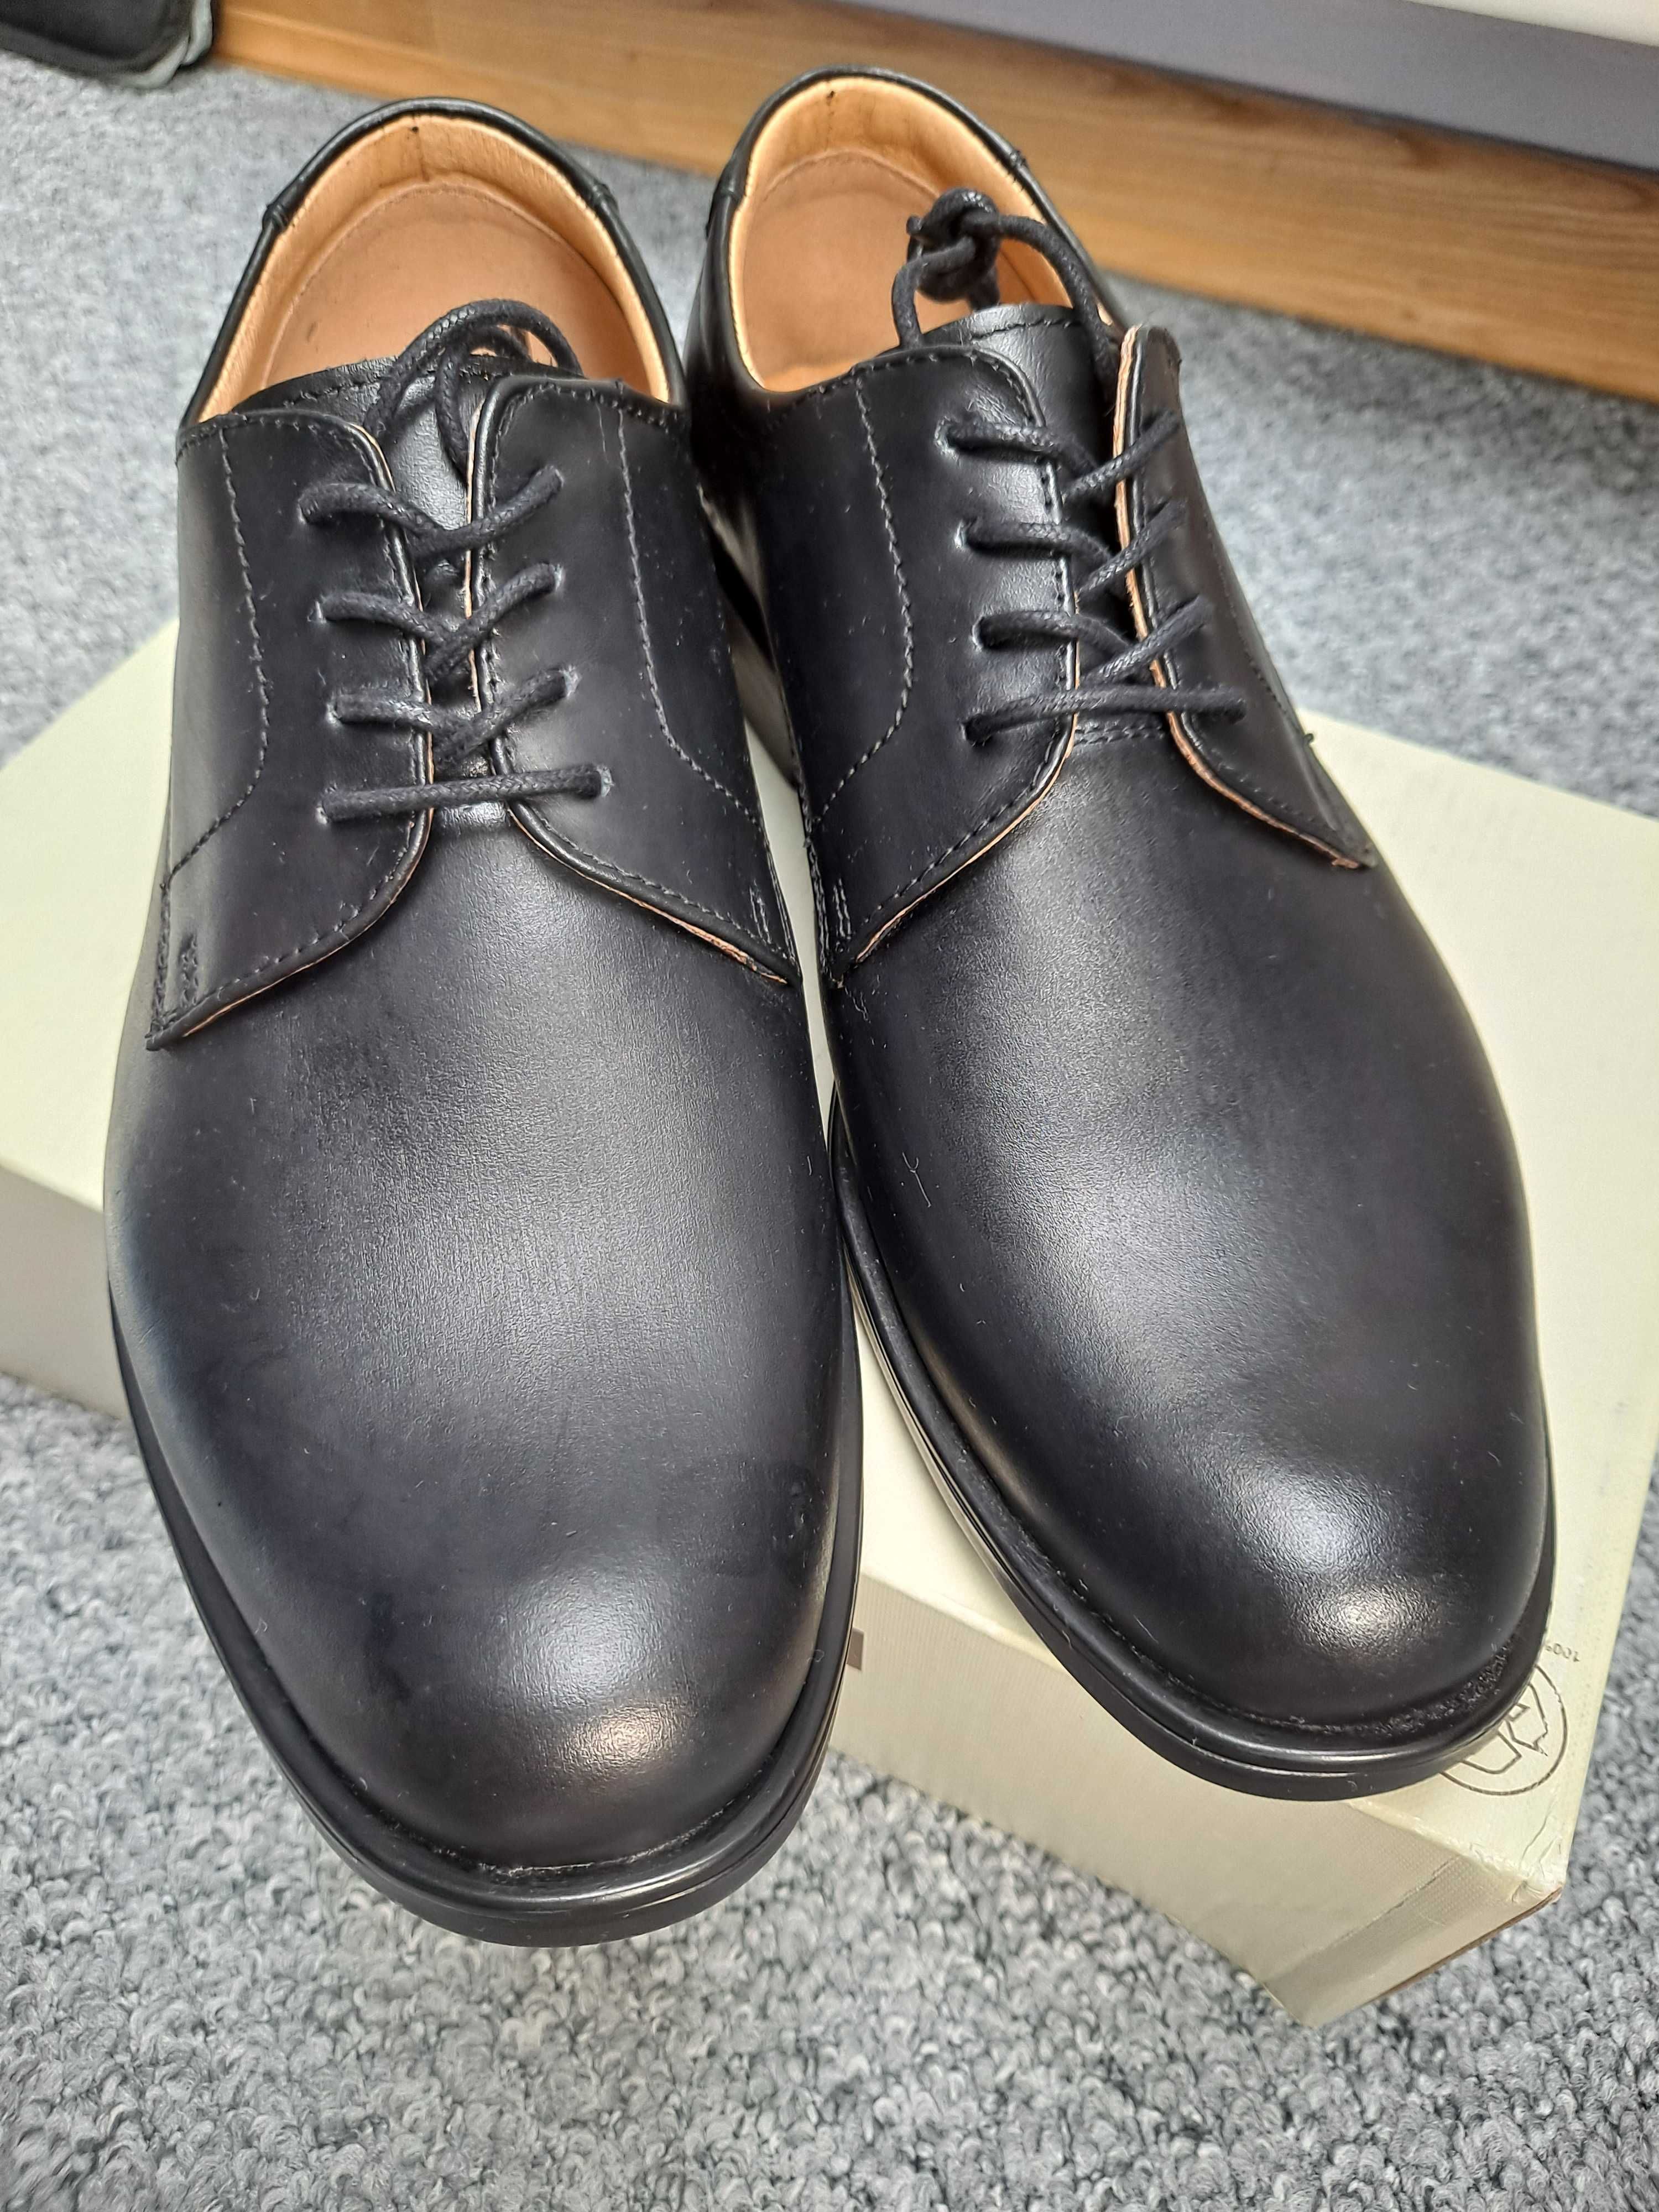 Pantofle skórzane męskie marki "Wojas" -  czarne, eleganckie (nowe)